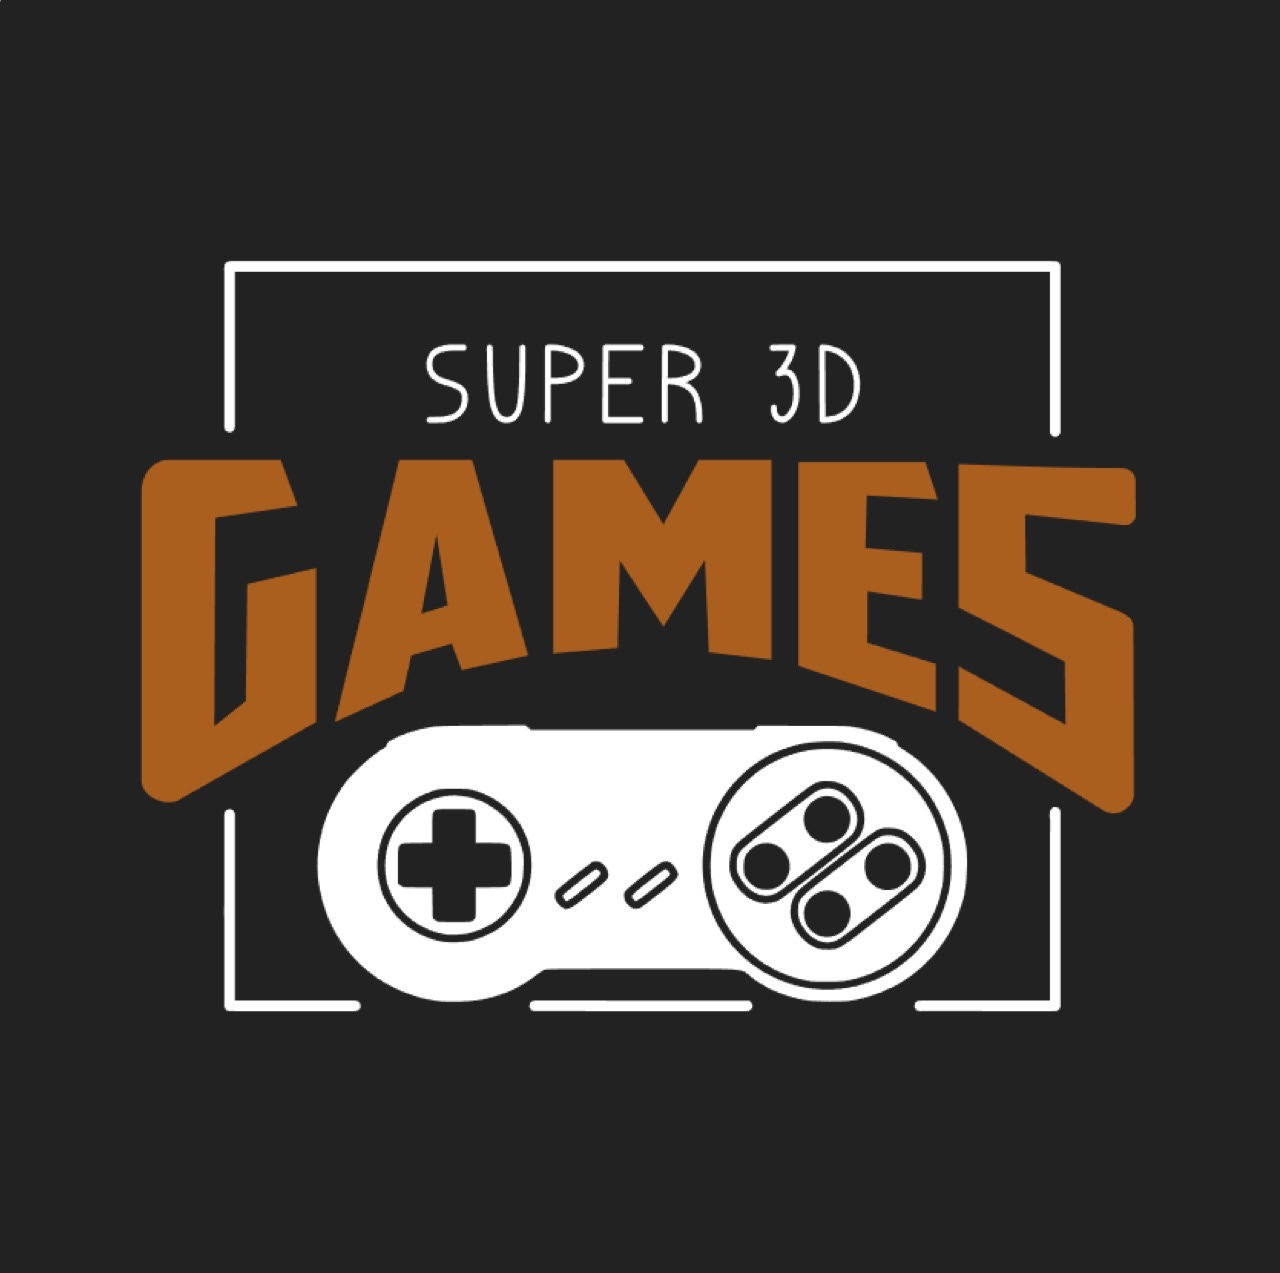 Super Game Retro Box 93 mil jogos - Super 3D Games - 2 Controles PS +  Brinde Estrela Super Mário